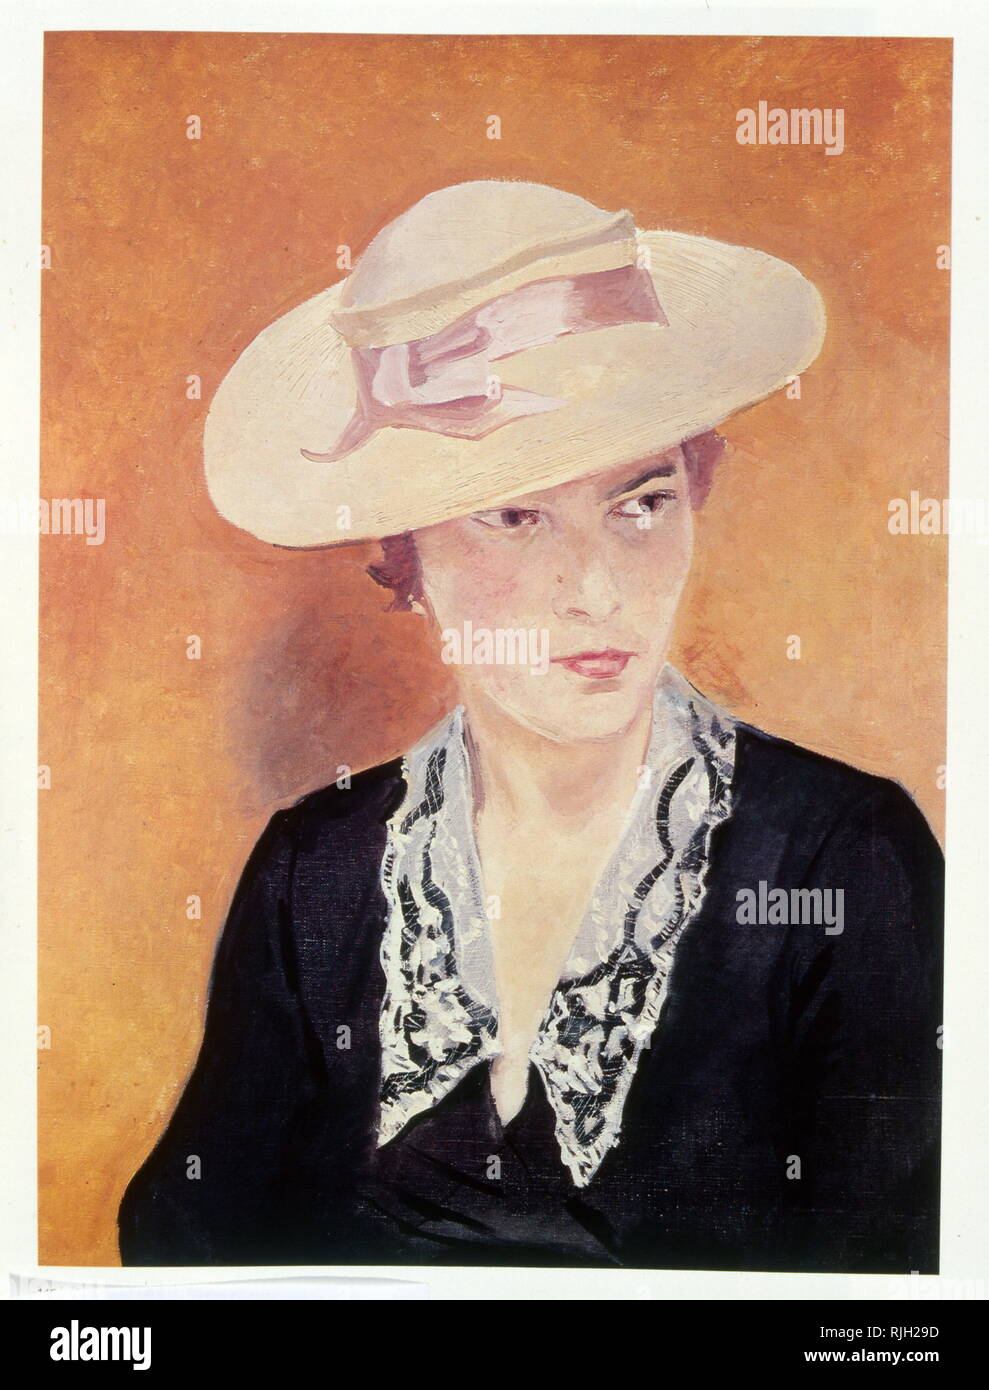 Bildnis einer Dame mit Hut, 1938, von Alexander Deyneka, (1899-1969), sowjetische Russische Sozialistische Realismus Maler, Graphiker, Bildhauer. Stockfoto